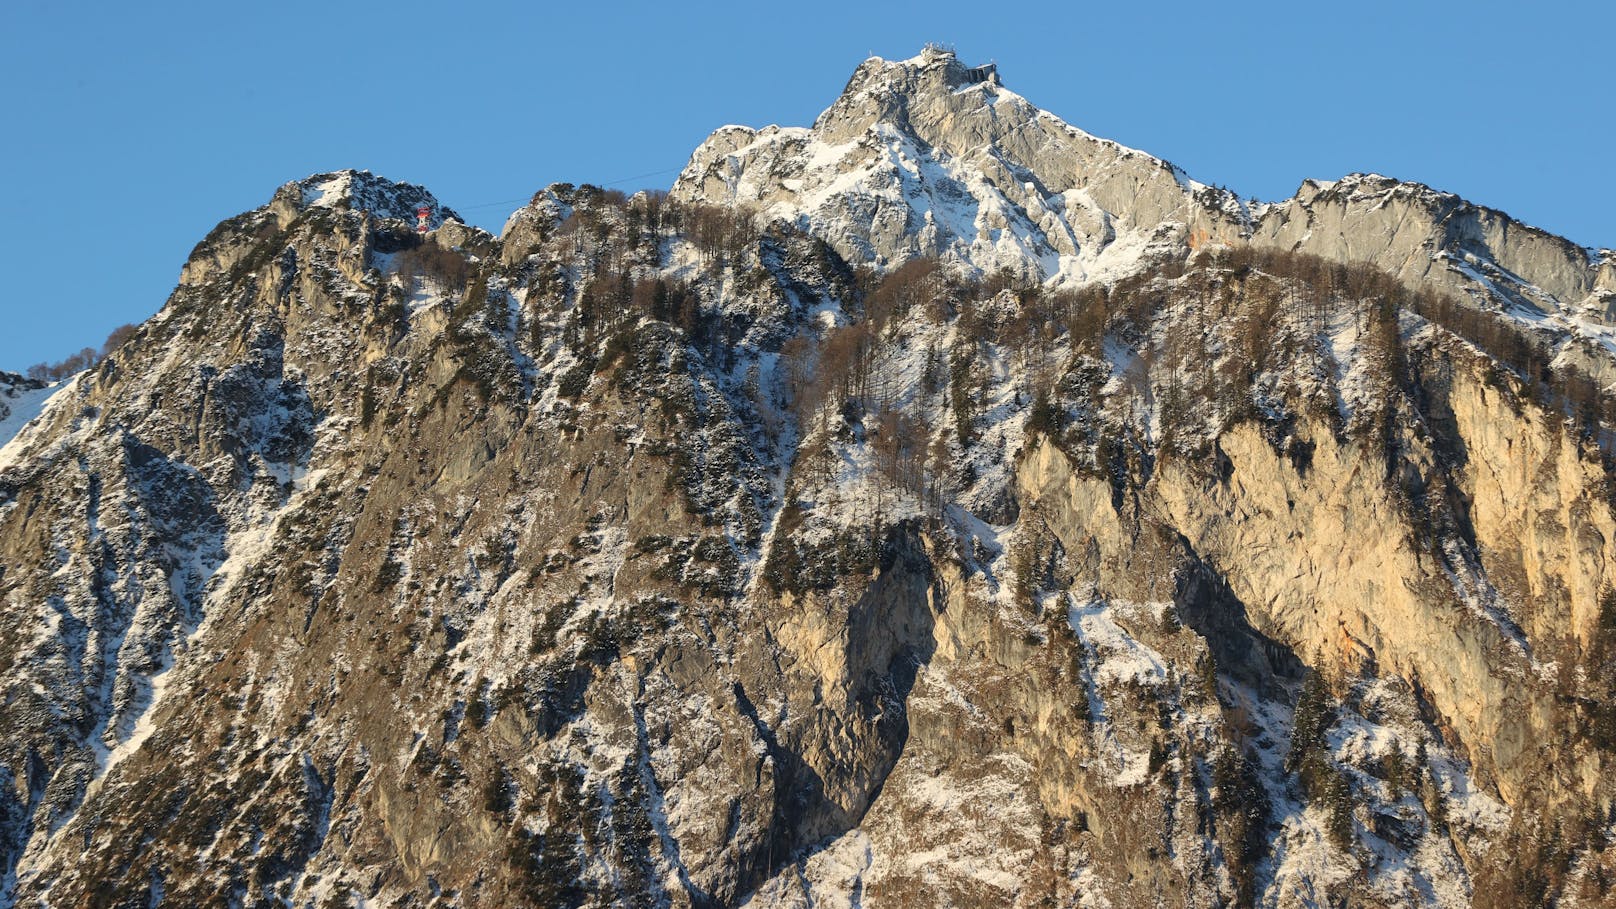 Auf der bayerischen Seite des Untersberges ist am Samstag ein 47-jähriger Kletterer tödlich verunglückt.